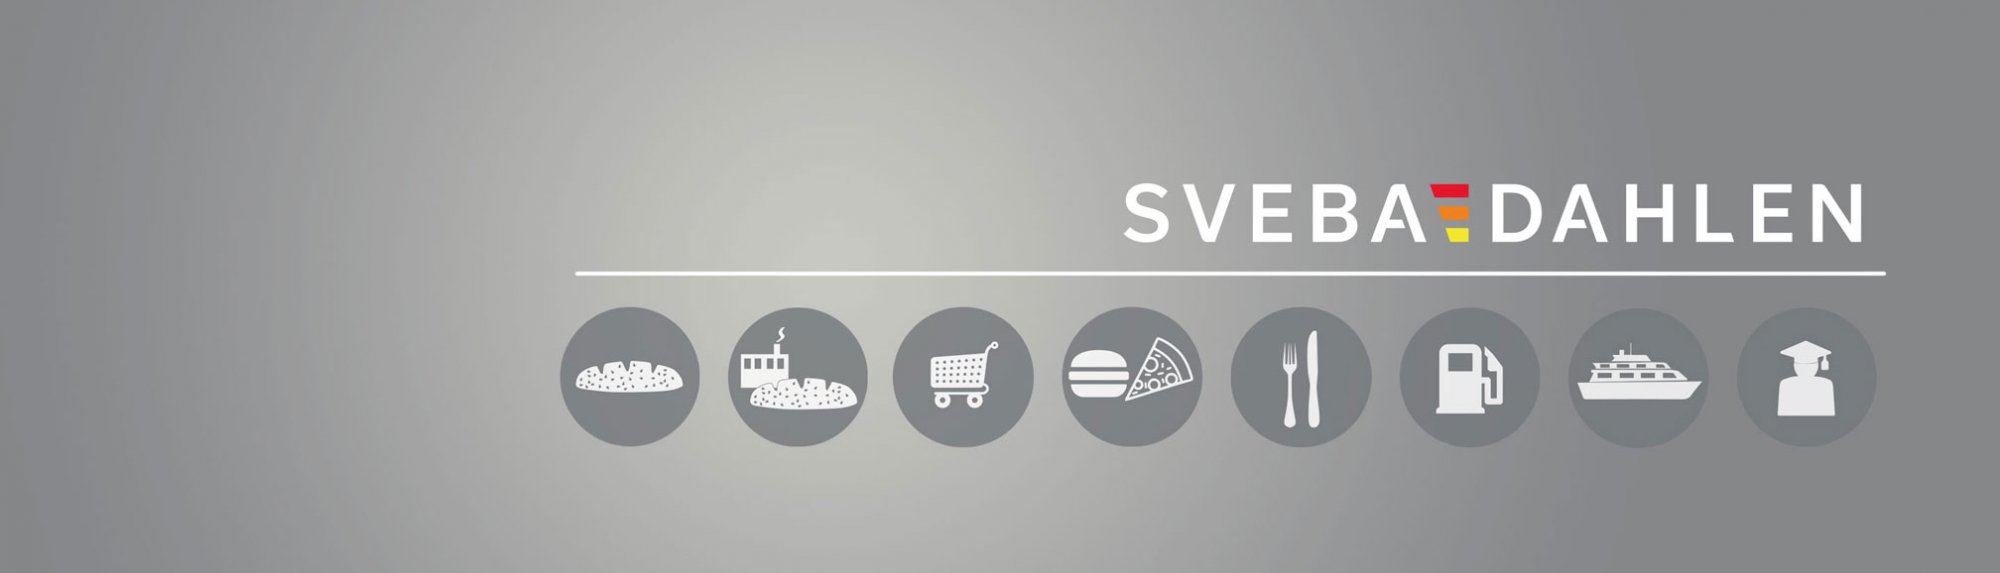 Buy rack ovens, pizza ovens, bakery ovens, dough handling machines, industrial ovens of highest quality from Sveba Dahlen